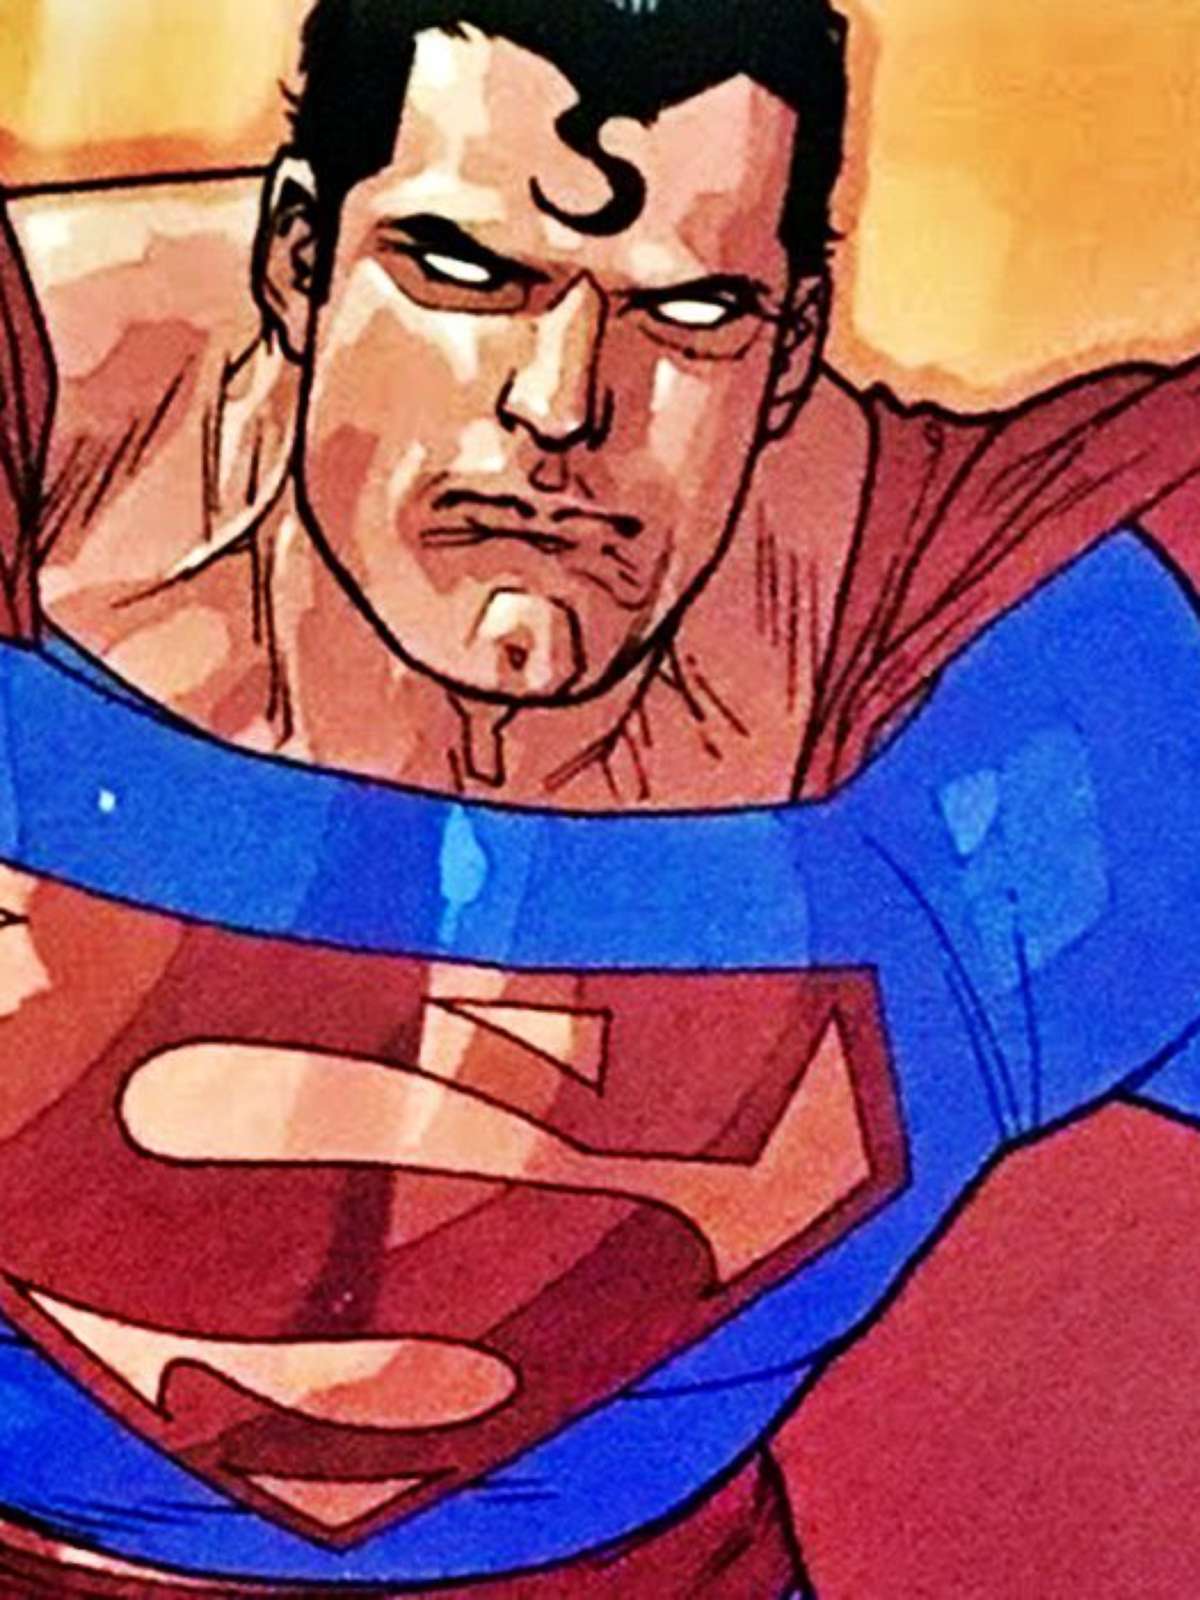 Novo filme do Superman não mostrará herói na juventude, diz James